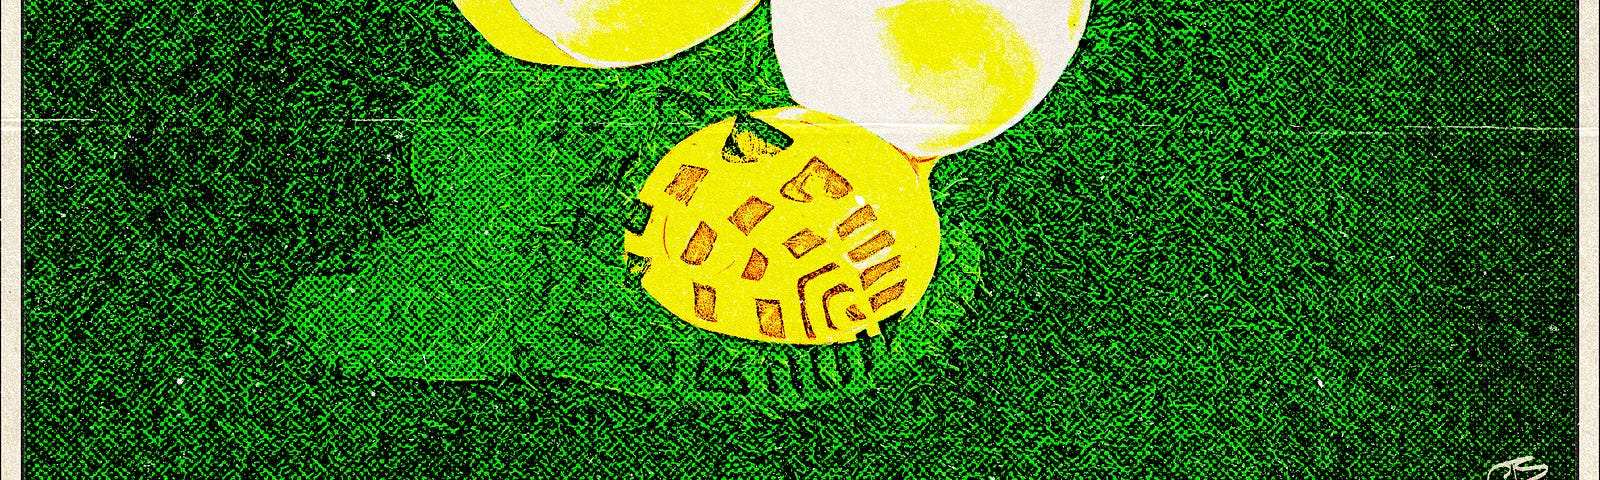 Footprint in broken egg yolk